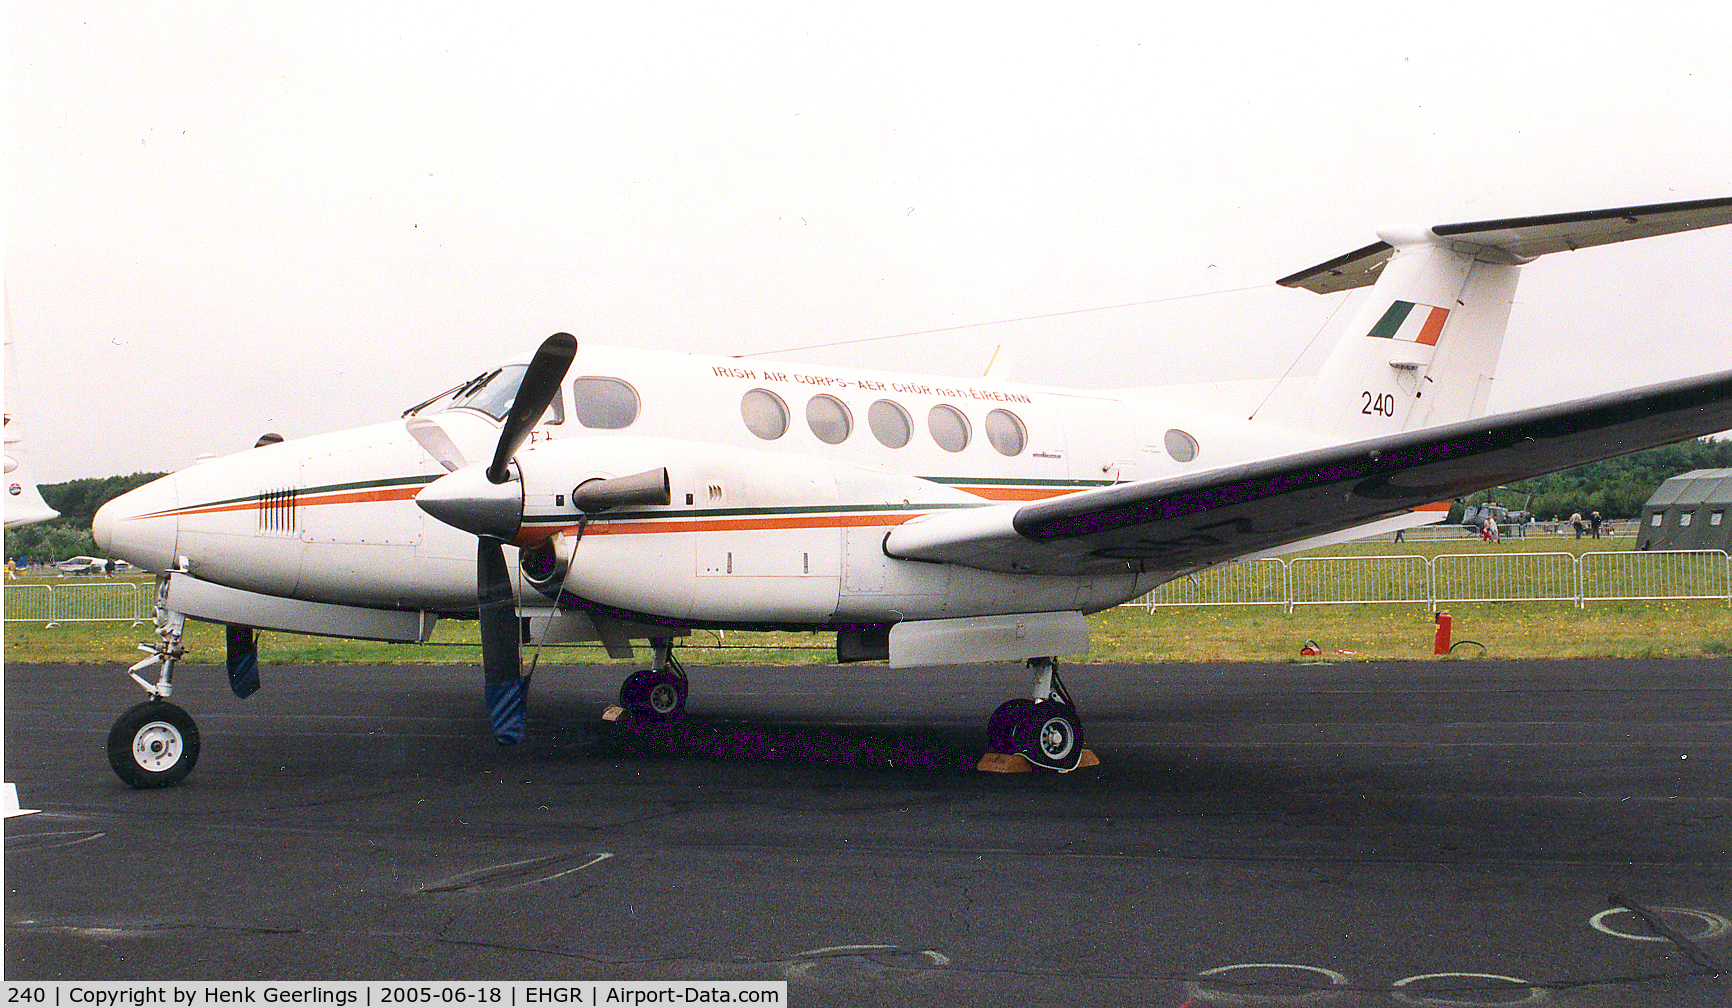 240, 1980 Beech 200 Super King Air C/N BB-672, Irish Air Corps , 102 sqn - IAC